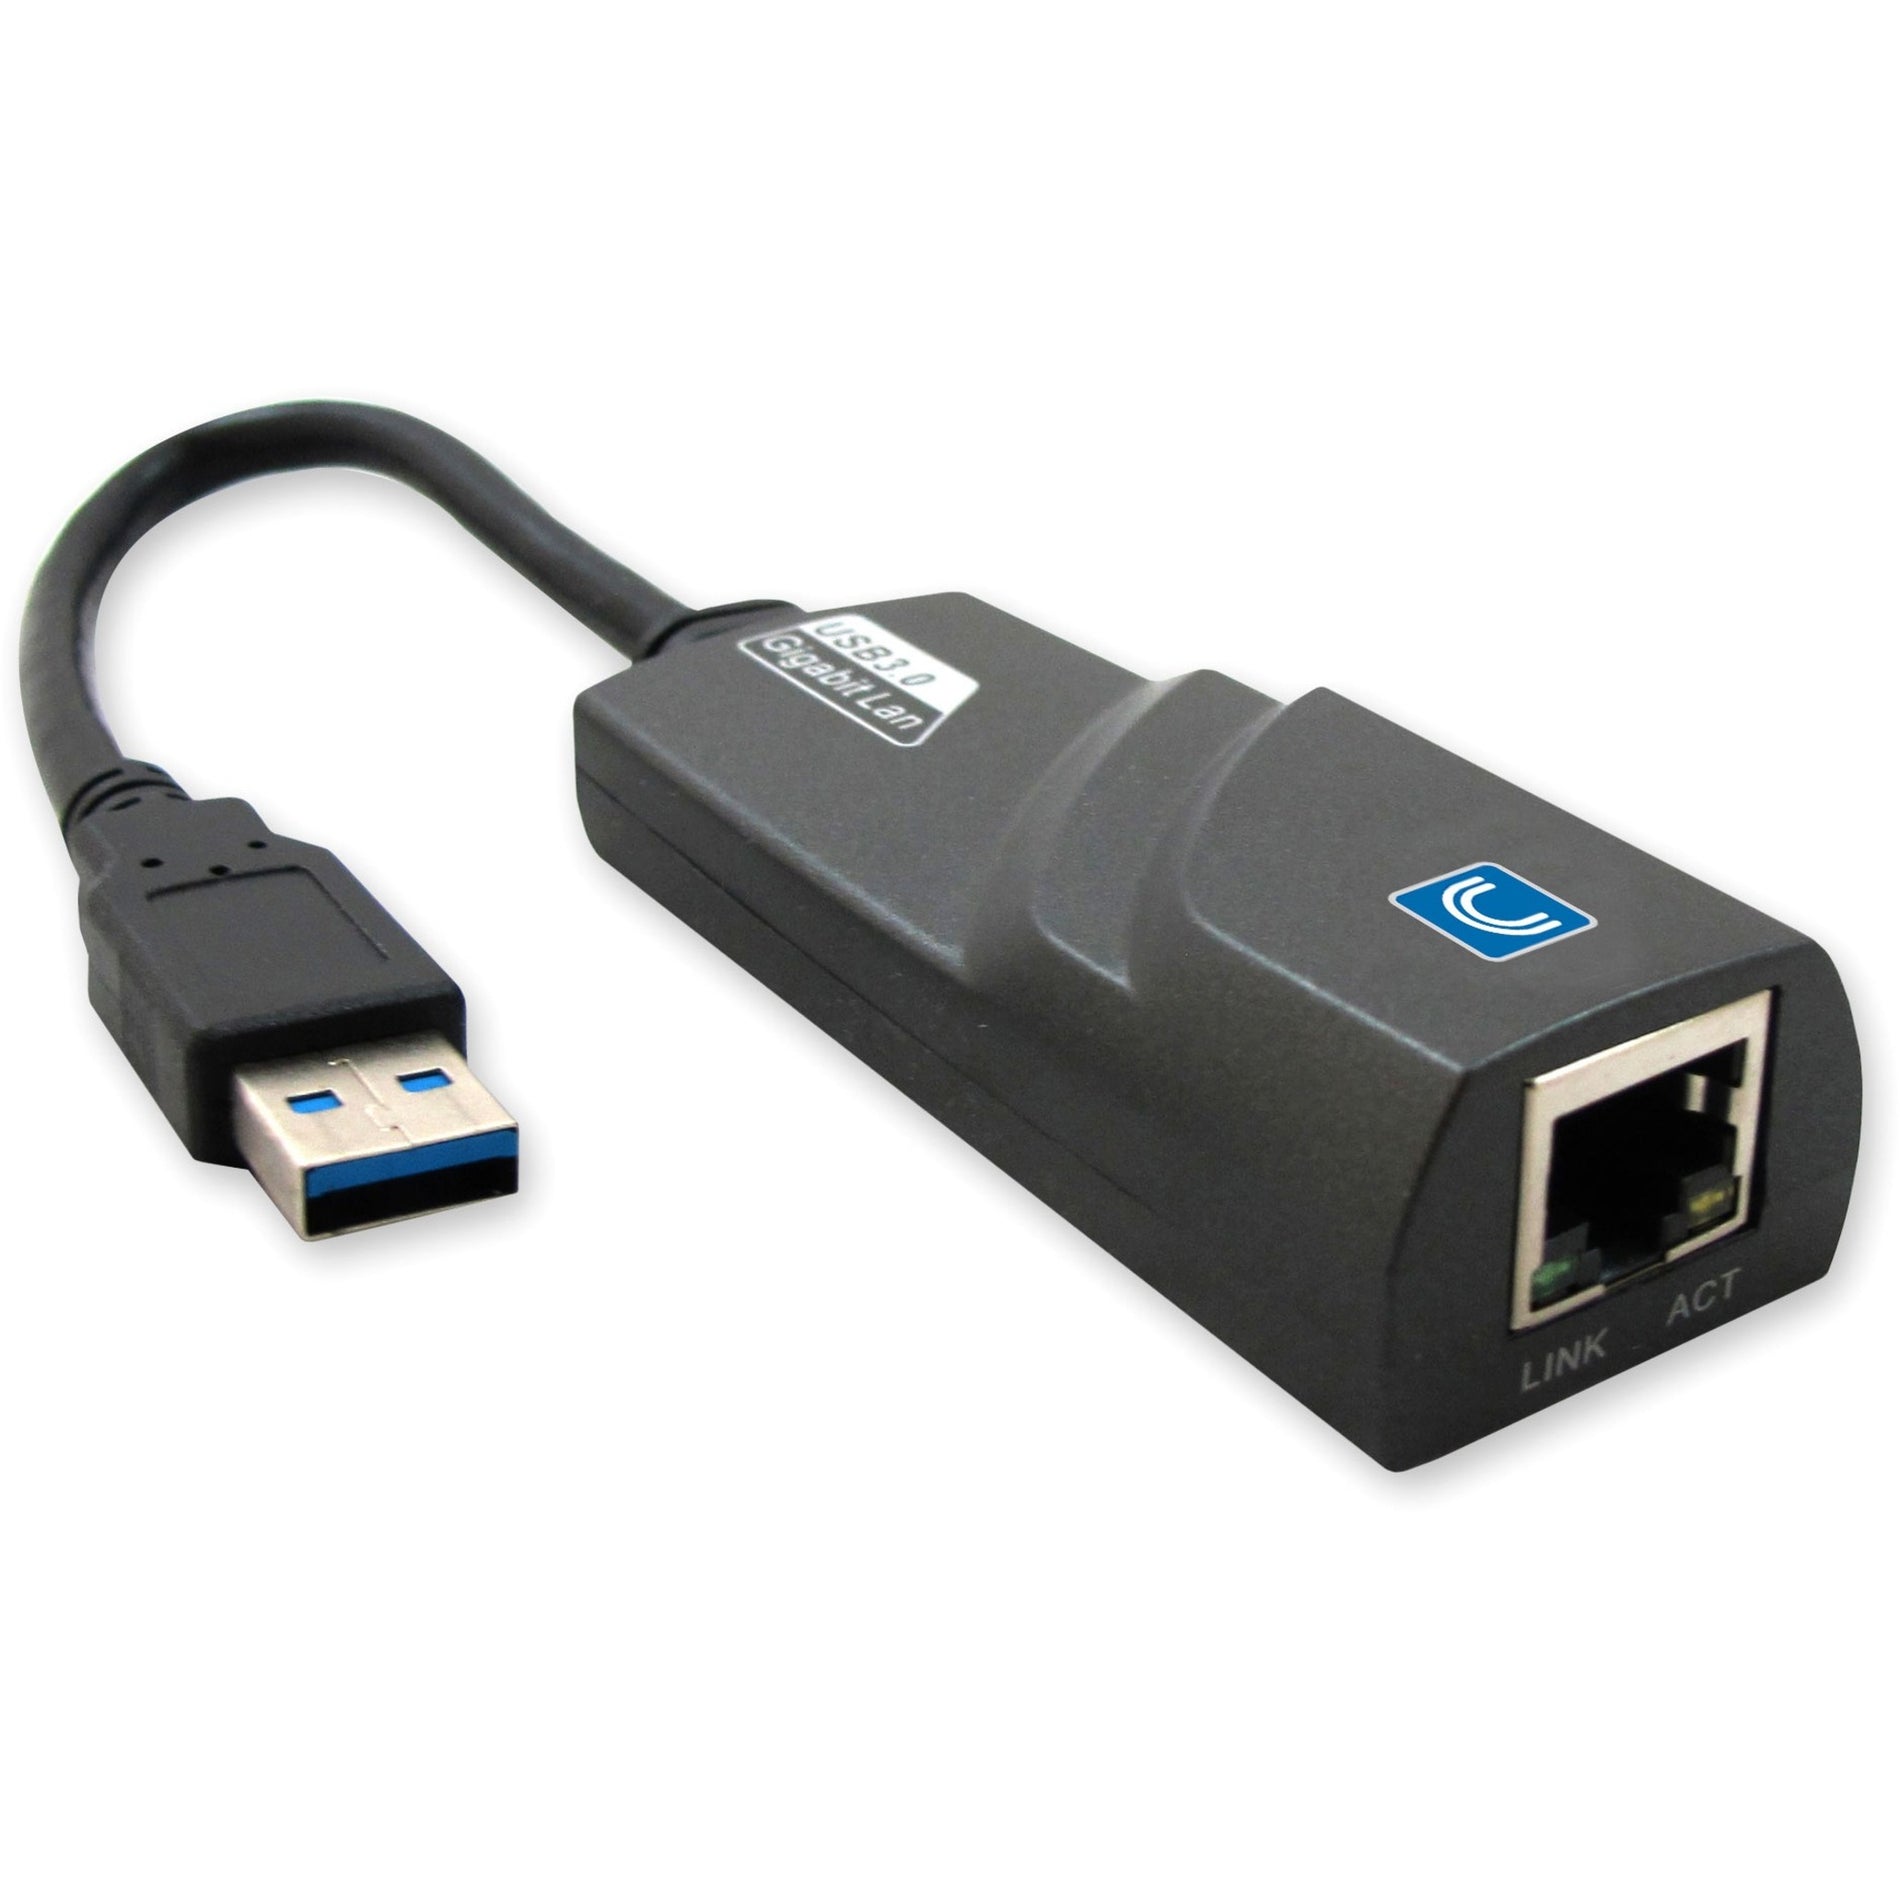 Comprehensive USB3-RJ45 USB 3.0 to Gigabit Ethernet Adapter RJ45 10/100/1000 Mbps, 2 Yr Warranty